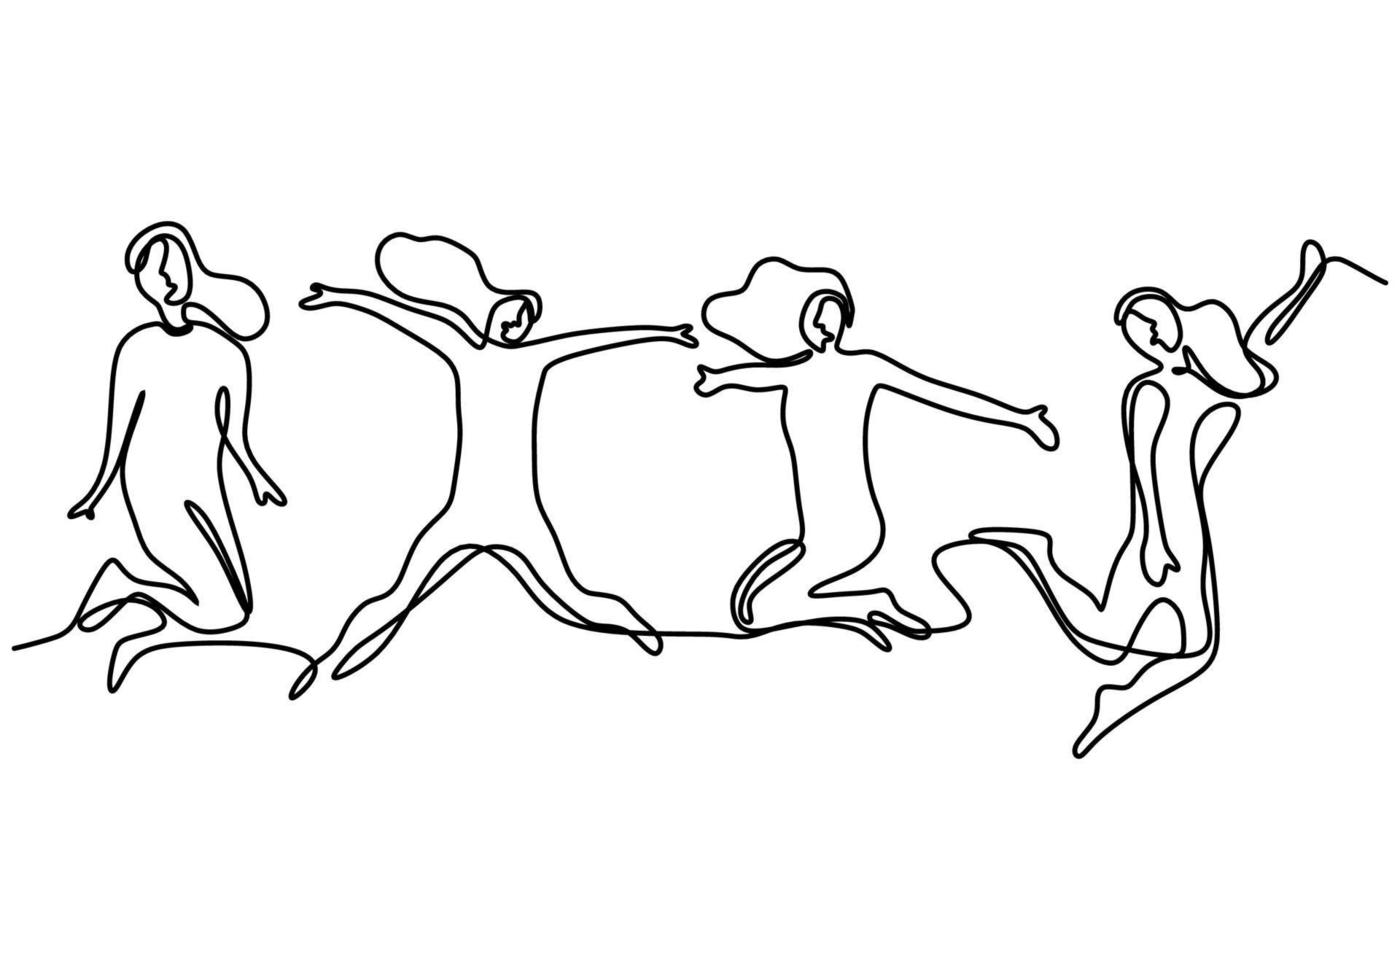 kontinuerlig linje ritning av hoppande glada teammedlemmar. fyra unga människor hoppar tillsammans för att uttrycka sin lycka. grupp på fyra personer hoppar och frihet minimalistisk design. vektor illustration